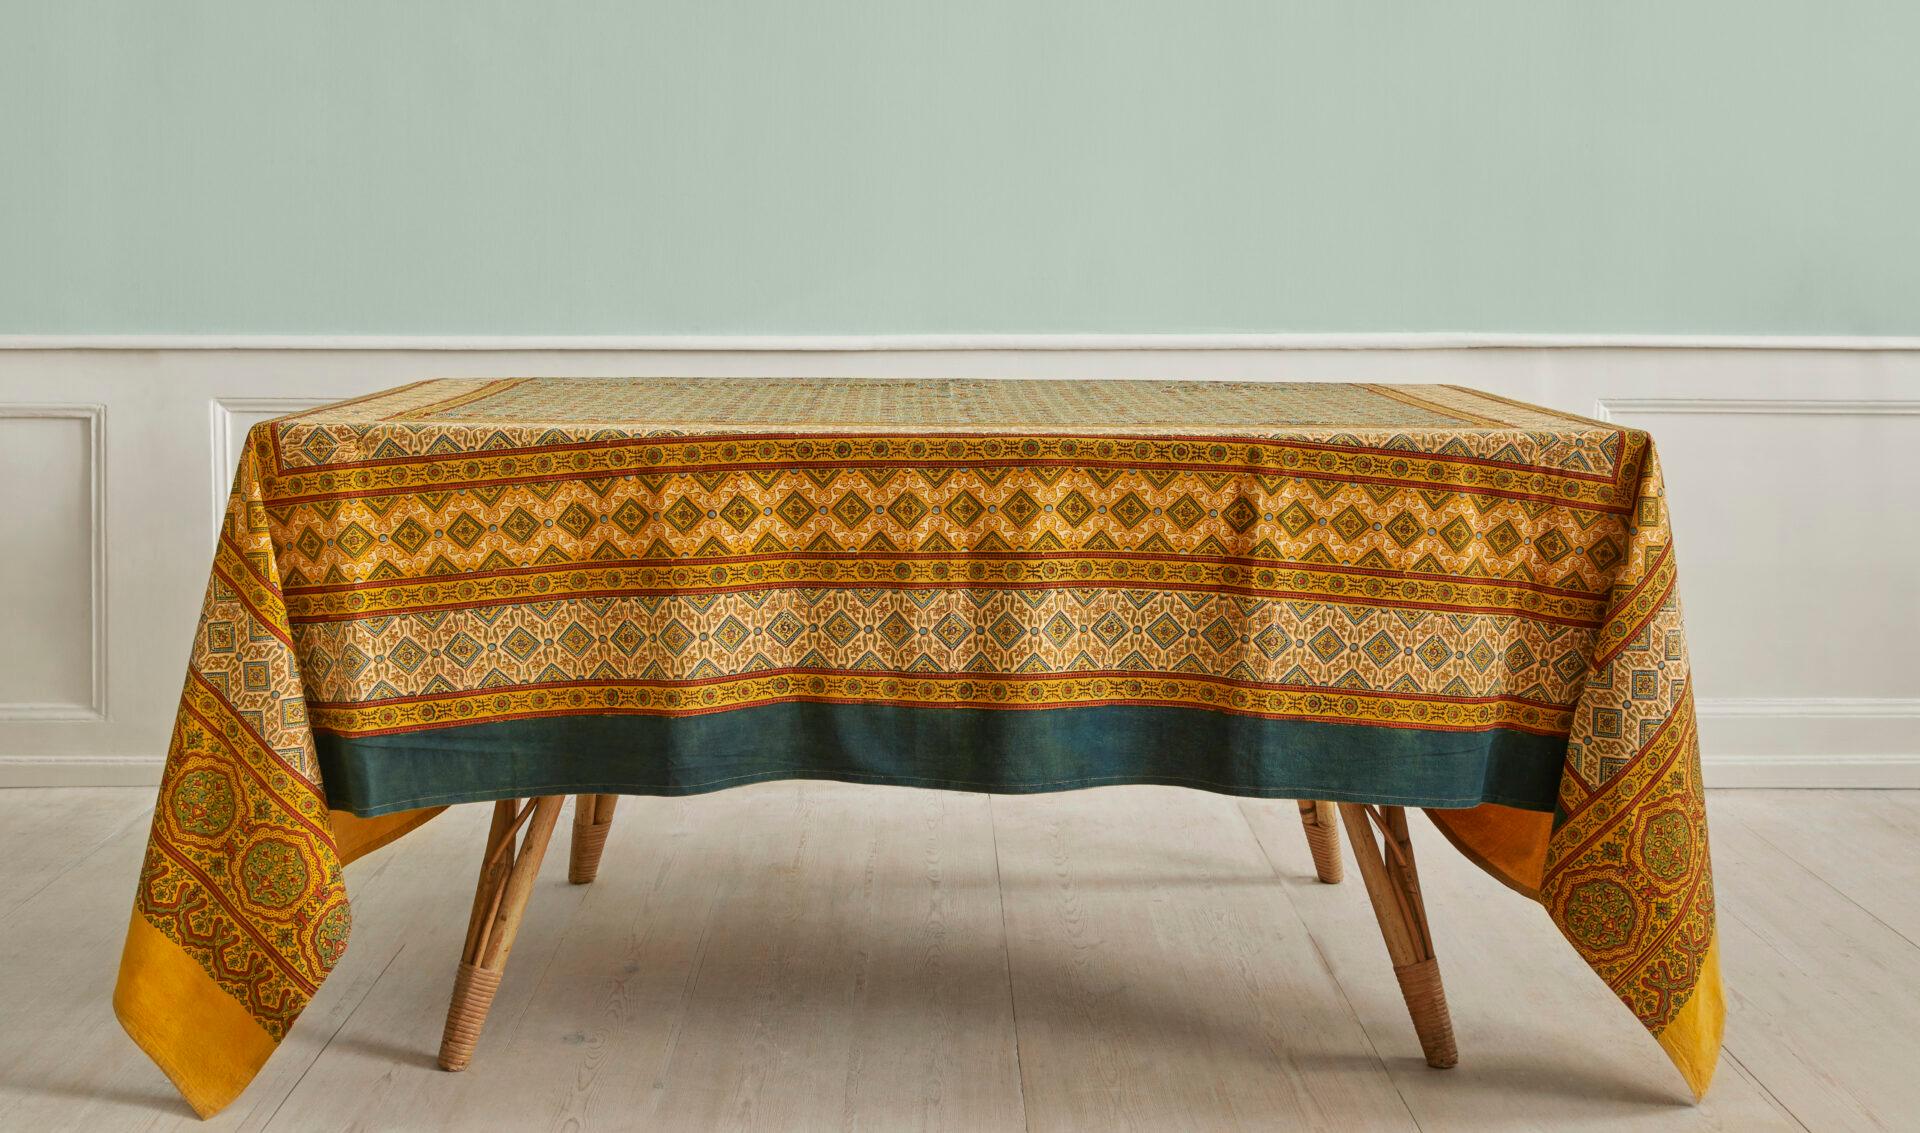 Indien, Zeitgenössisch

Tischdecke aus naturgefärbter Baumwolle mit Handblockdruck.

H 273 x B 226 cm